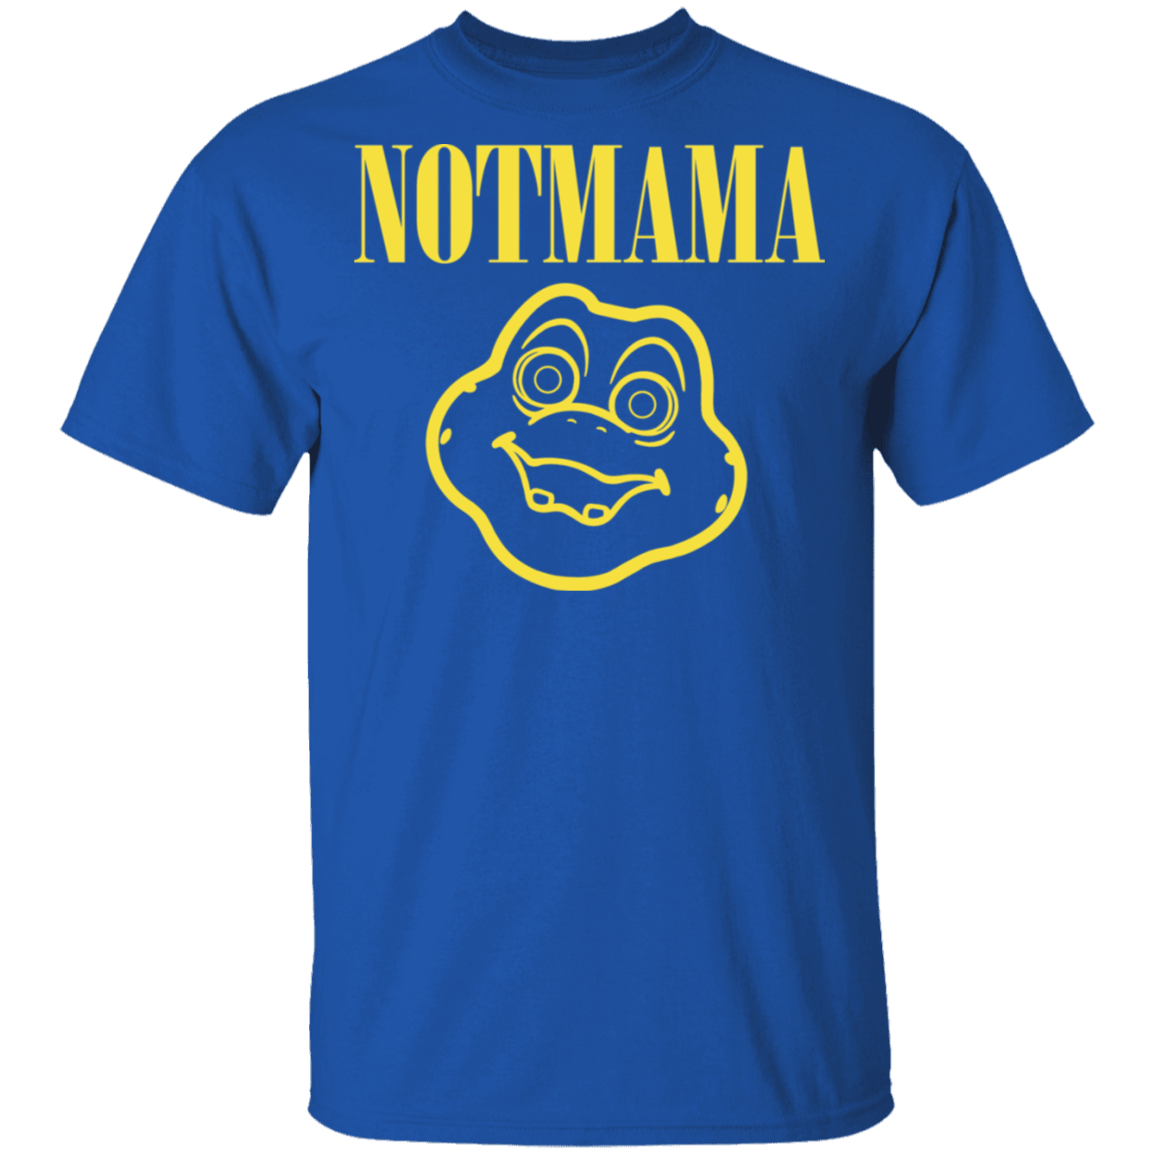 T-Shirts Royal / S Not Mama T-Shirt